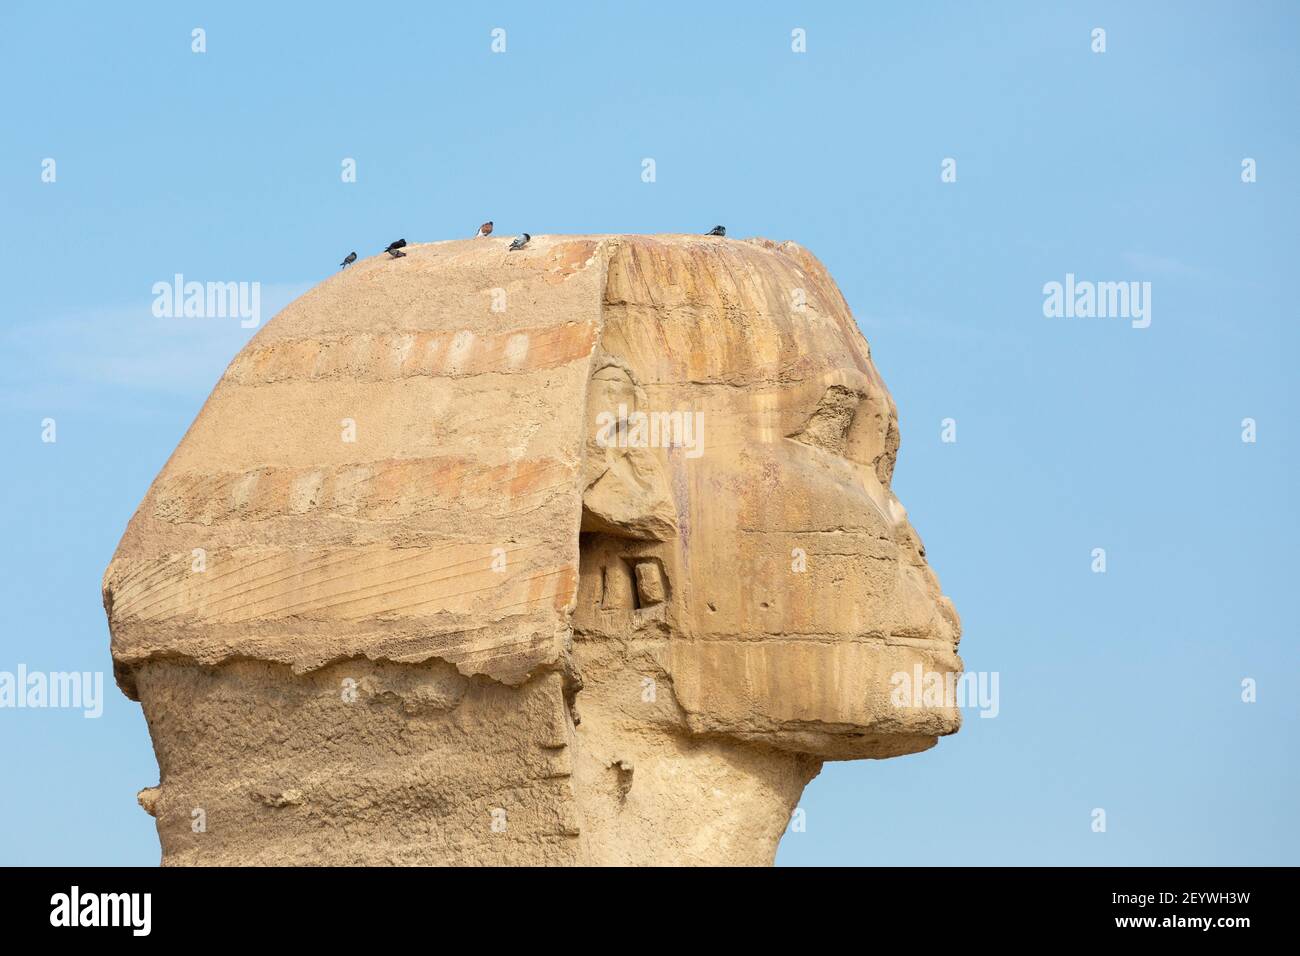 Profilansicht des Kopfes der Großen Sphinx von Gizeh mit auf der Spitze ruhenden Vögeln, Gizeh-Plateau, Groß-Kairo, Ägypten Stockfoto